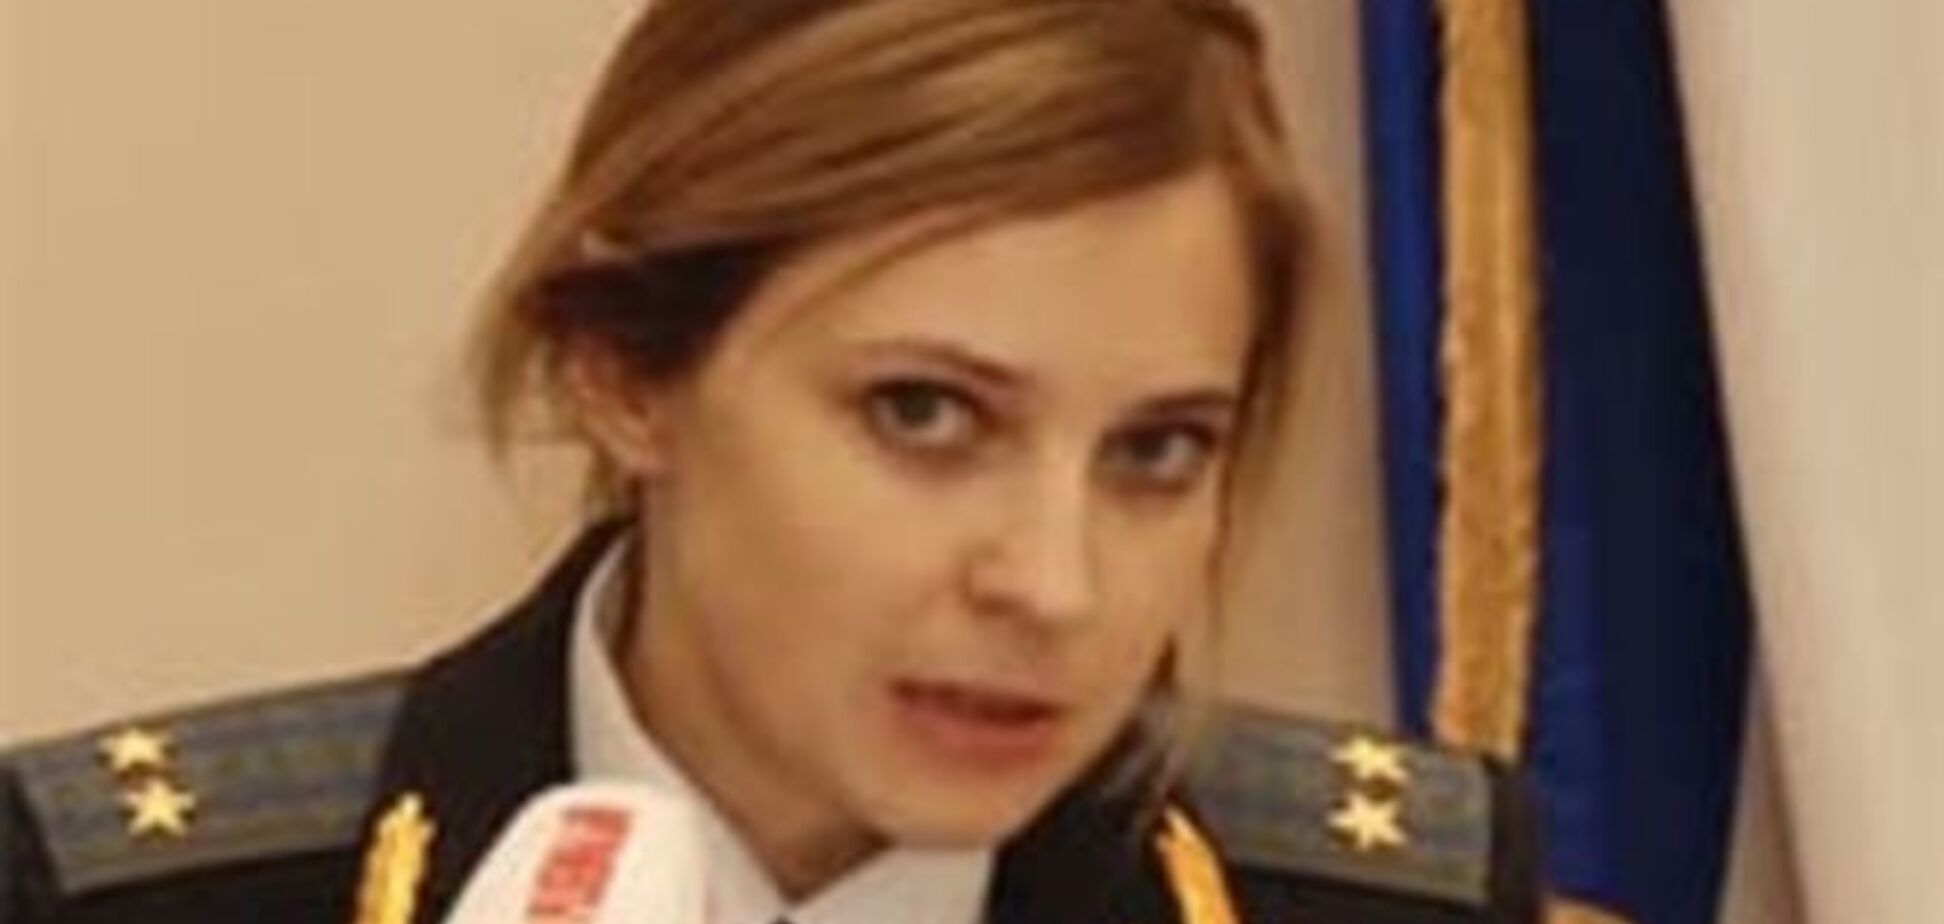 Прокурор Няшмяш, ублажая крымнаш, дослужилась до генерала